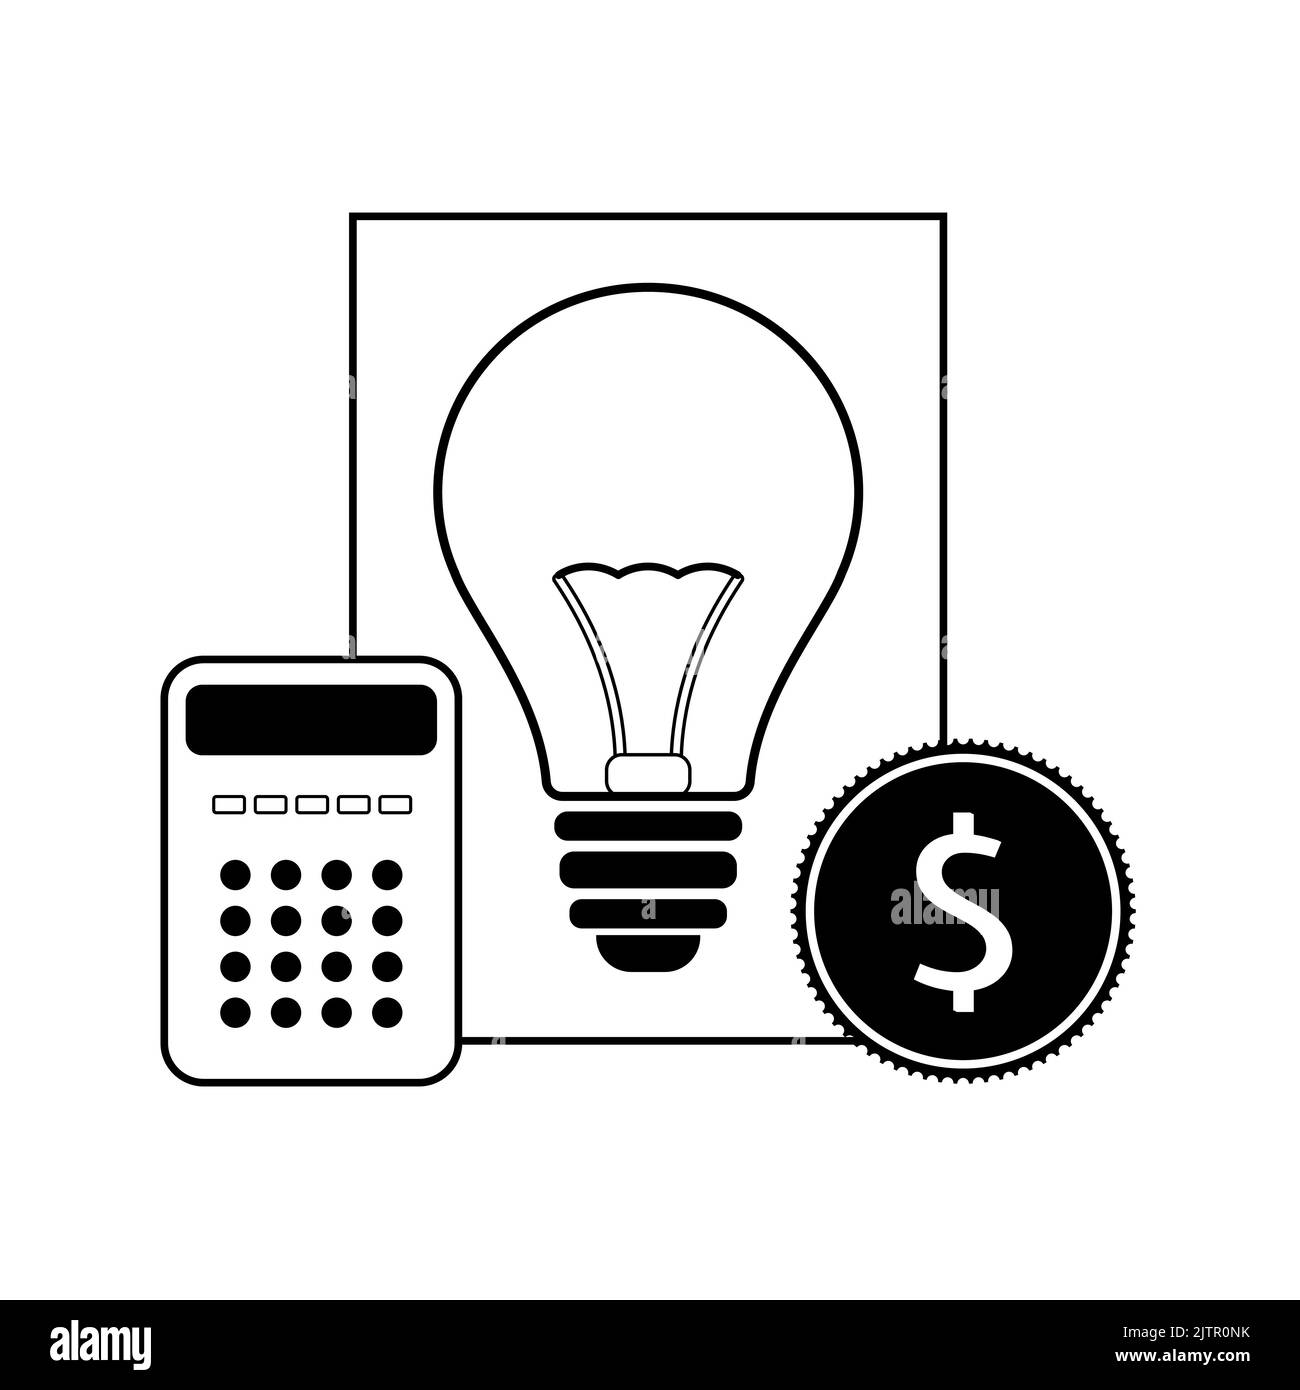 Energiepreiskonzept. Symbol von Bill, Glühbirne, Dollar-Münze und Rechner. Flache Vektorgrafik Stock Vektor